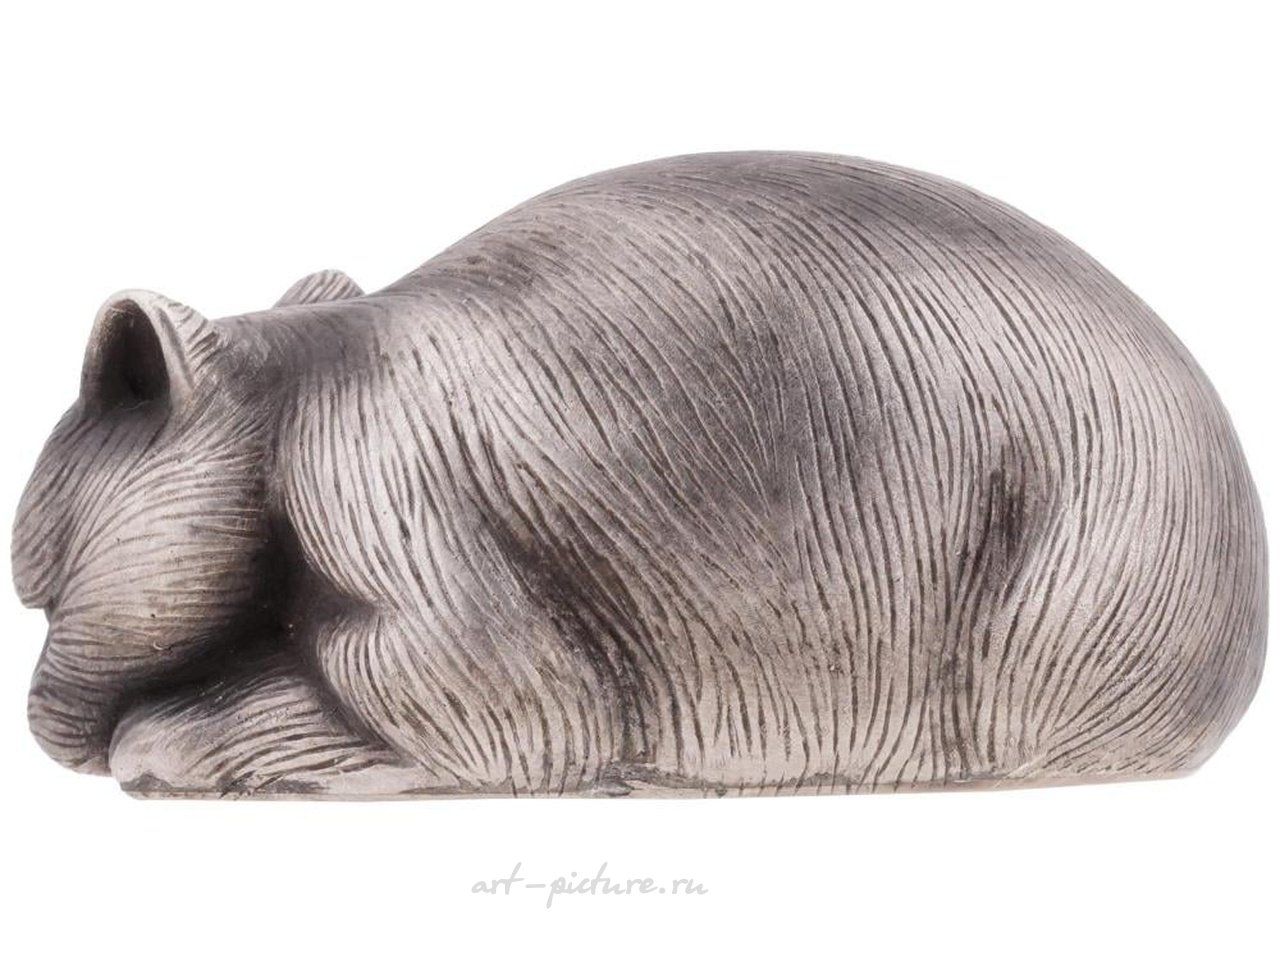 Русское серебро , Русская серебряная фигурка изготовлена в форме лежащей кошки.